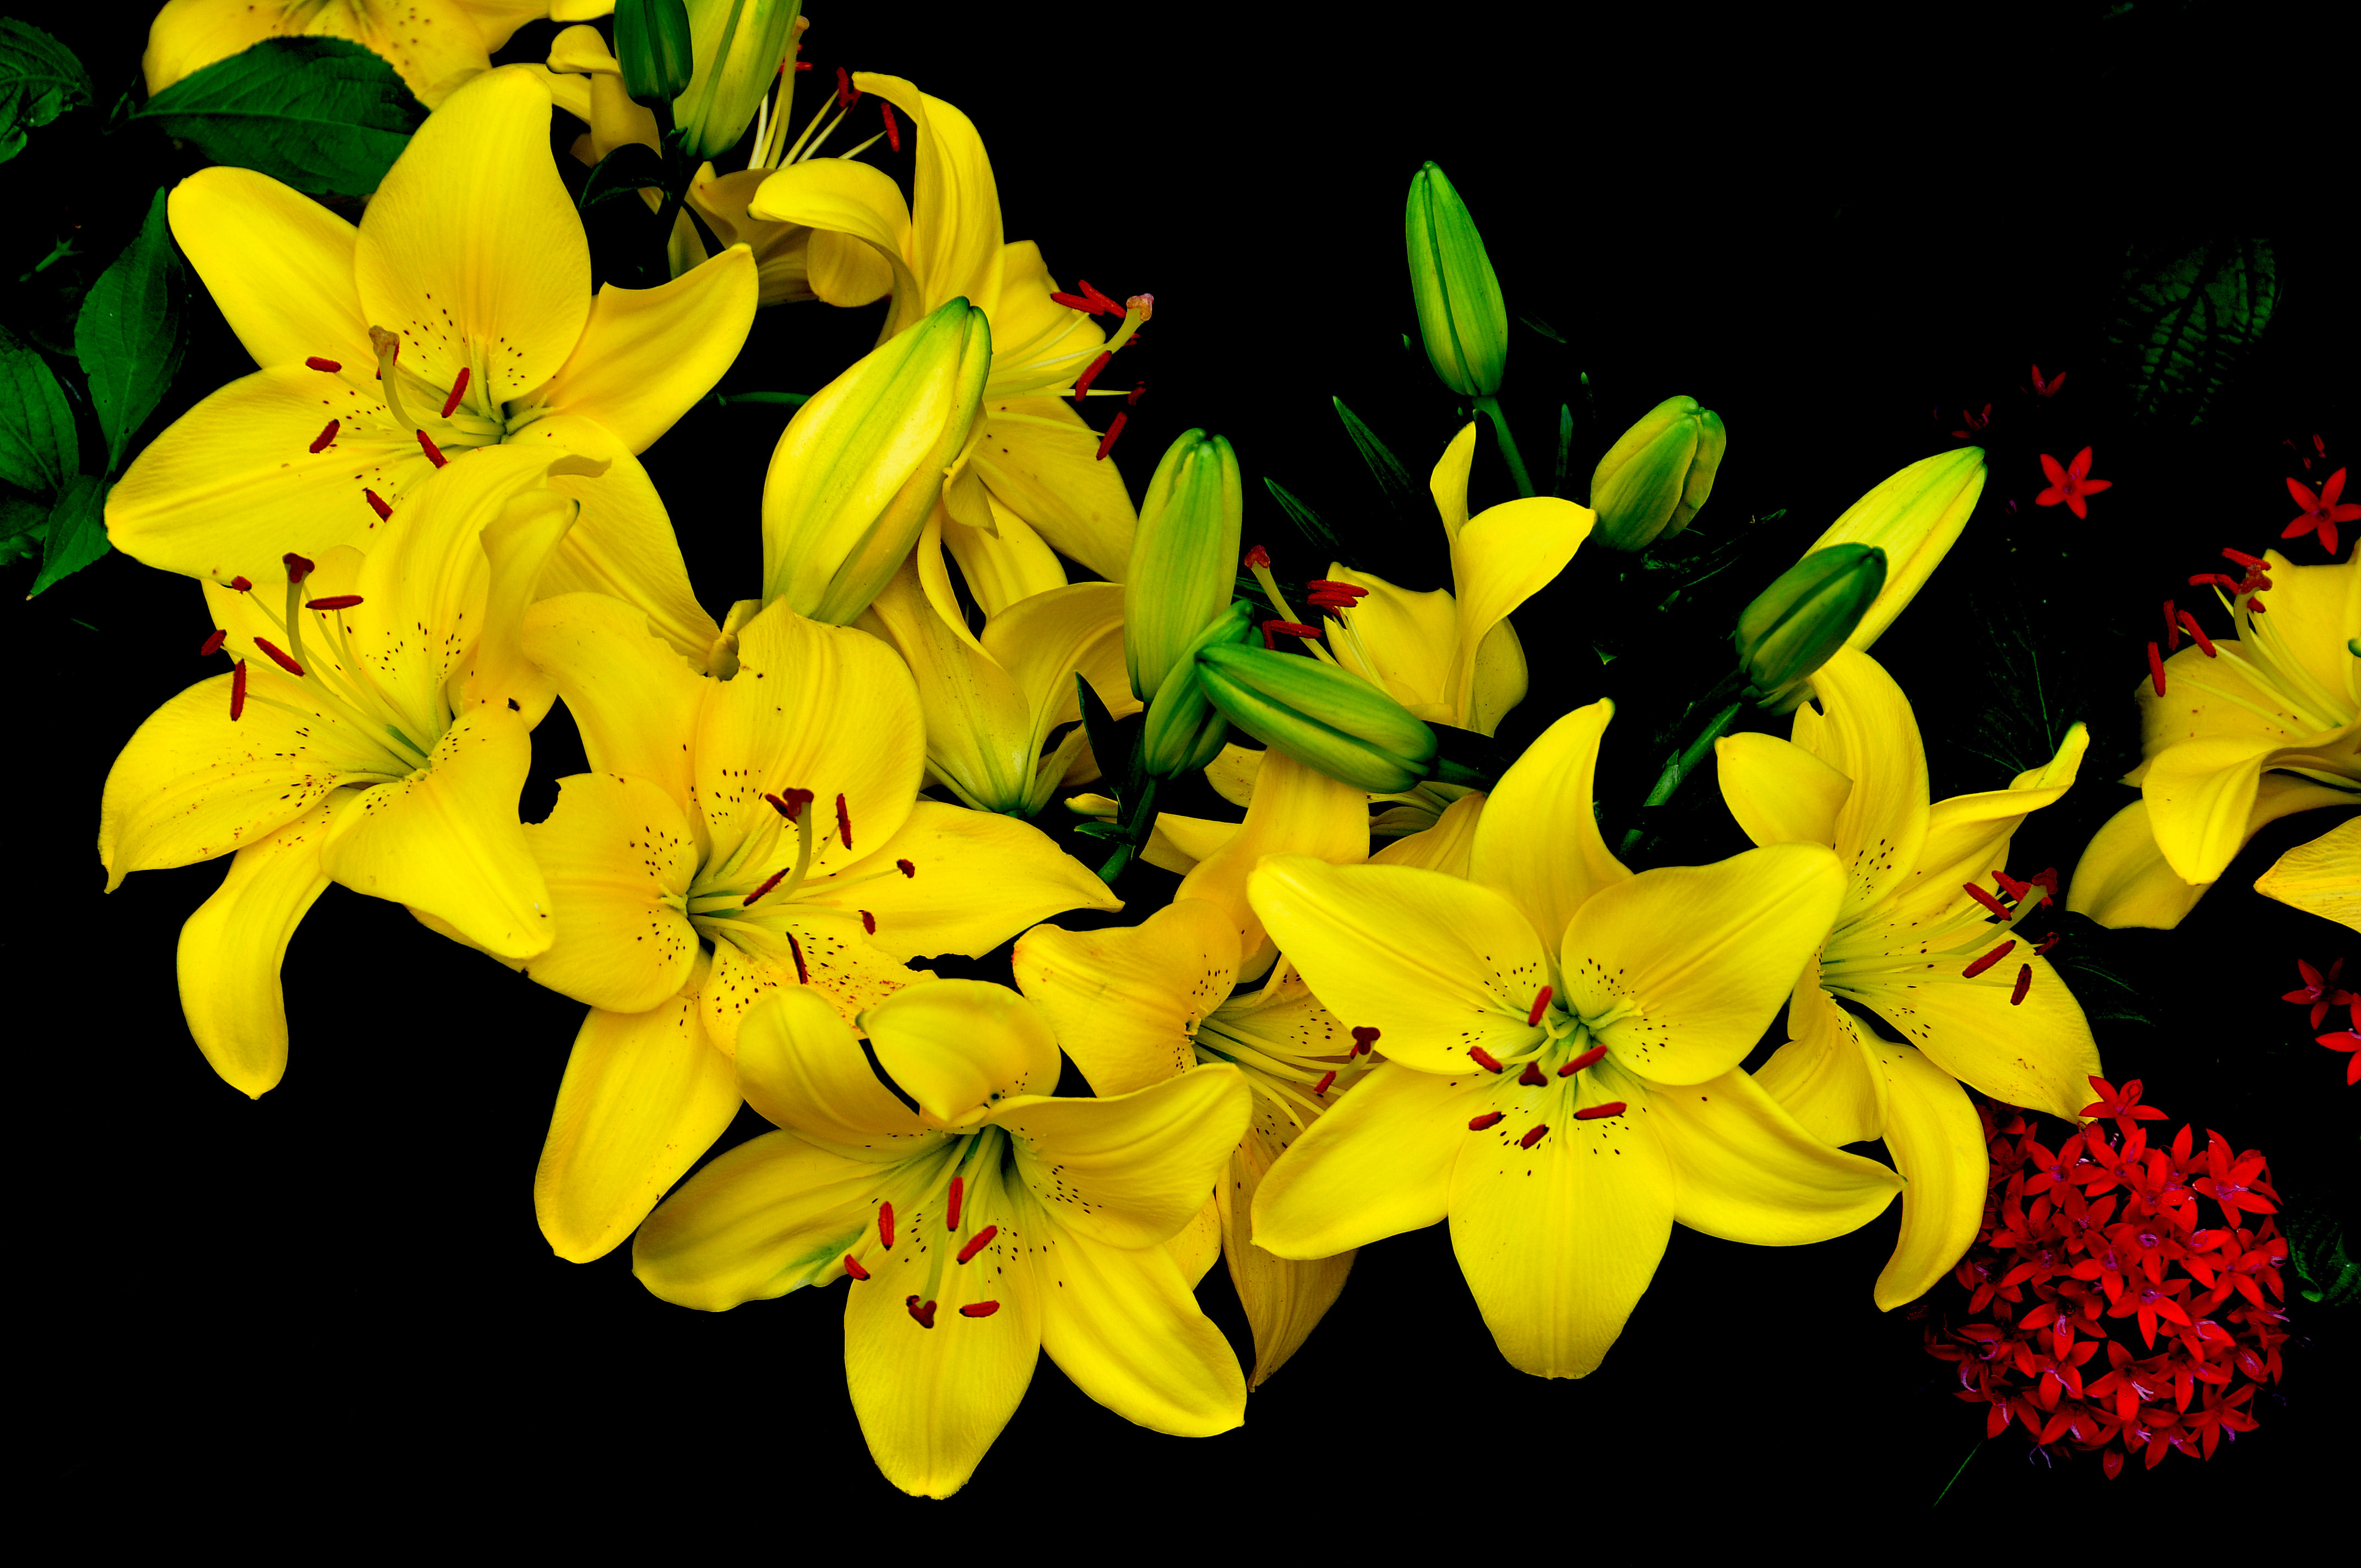 Фото лилия флора желтые лилии - бесплатные картинки на Fonwall